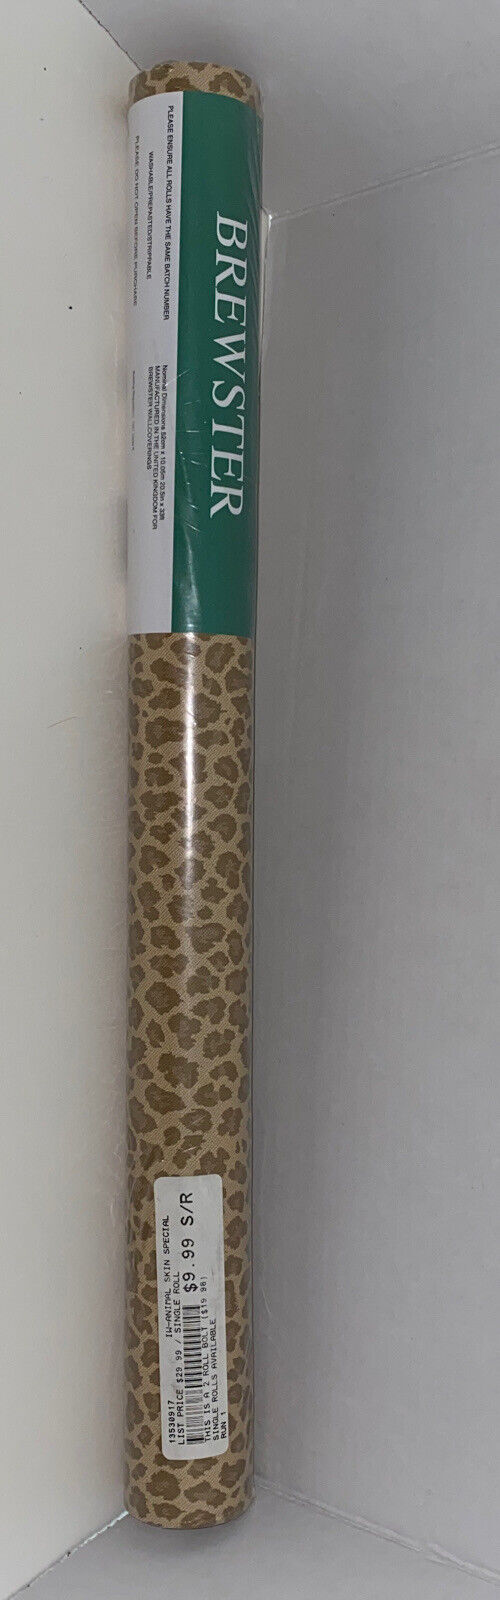 Brewster Wallpaper Animal Skin Cheetah Leopard Print 20.5”x33 Ft Roll #30917 NEW